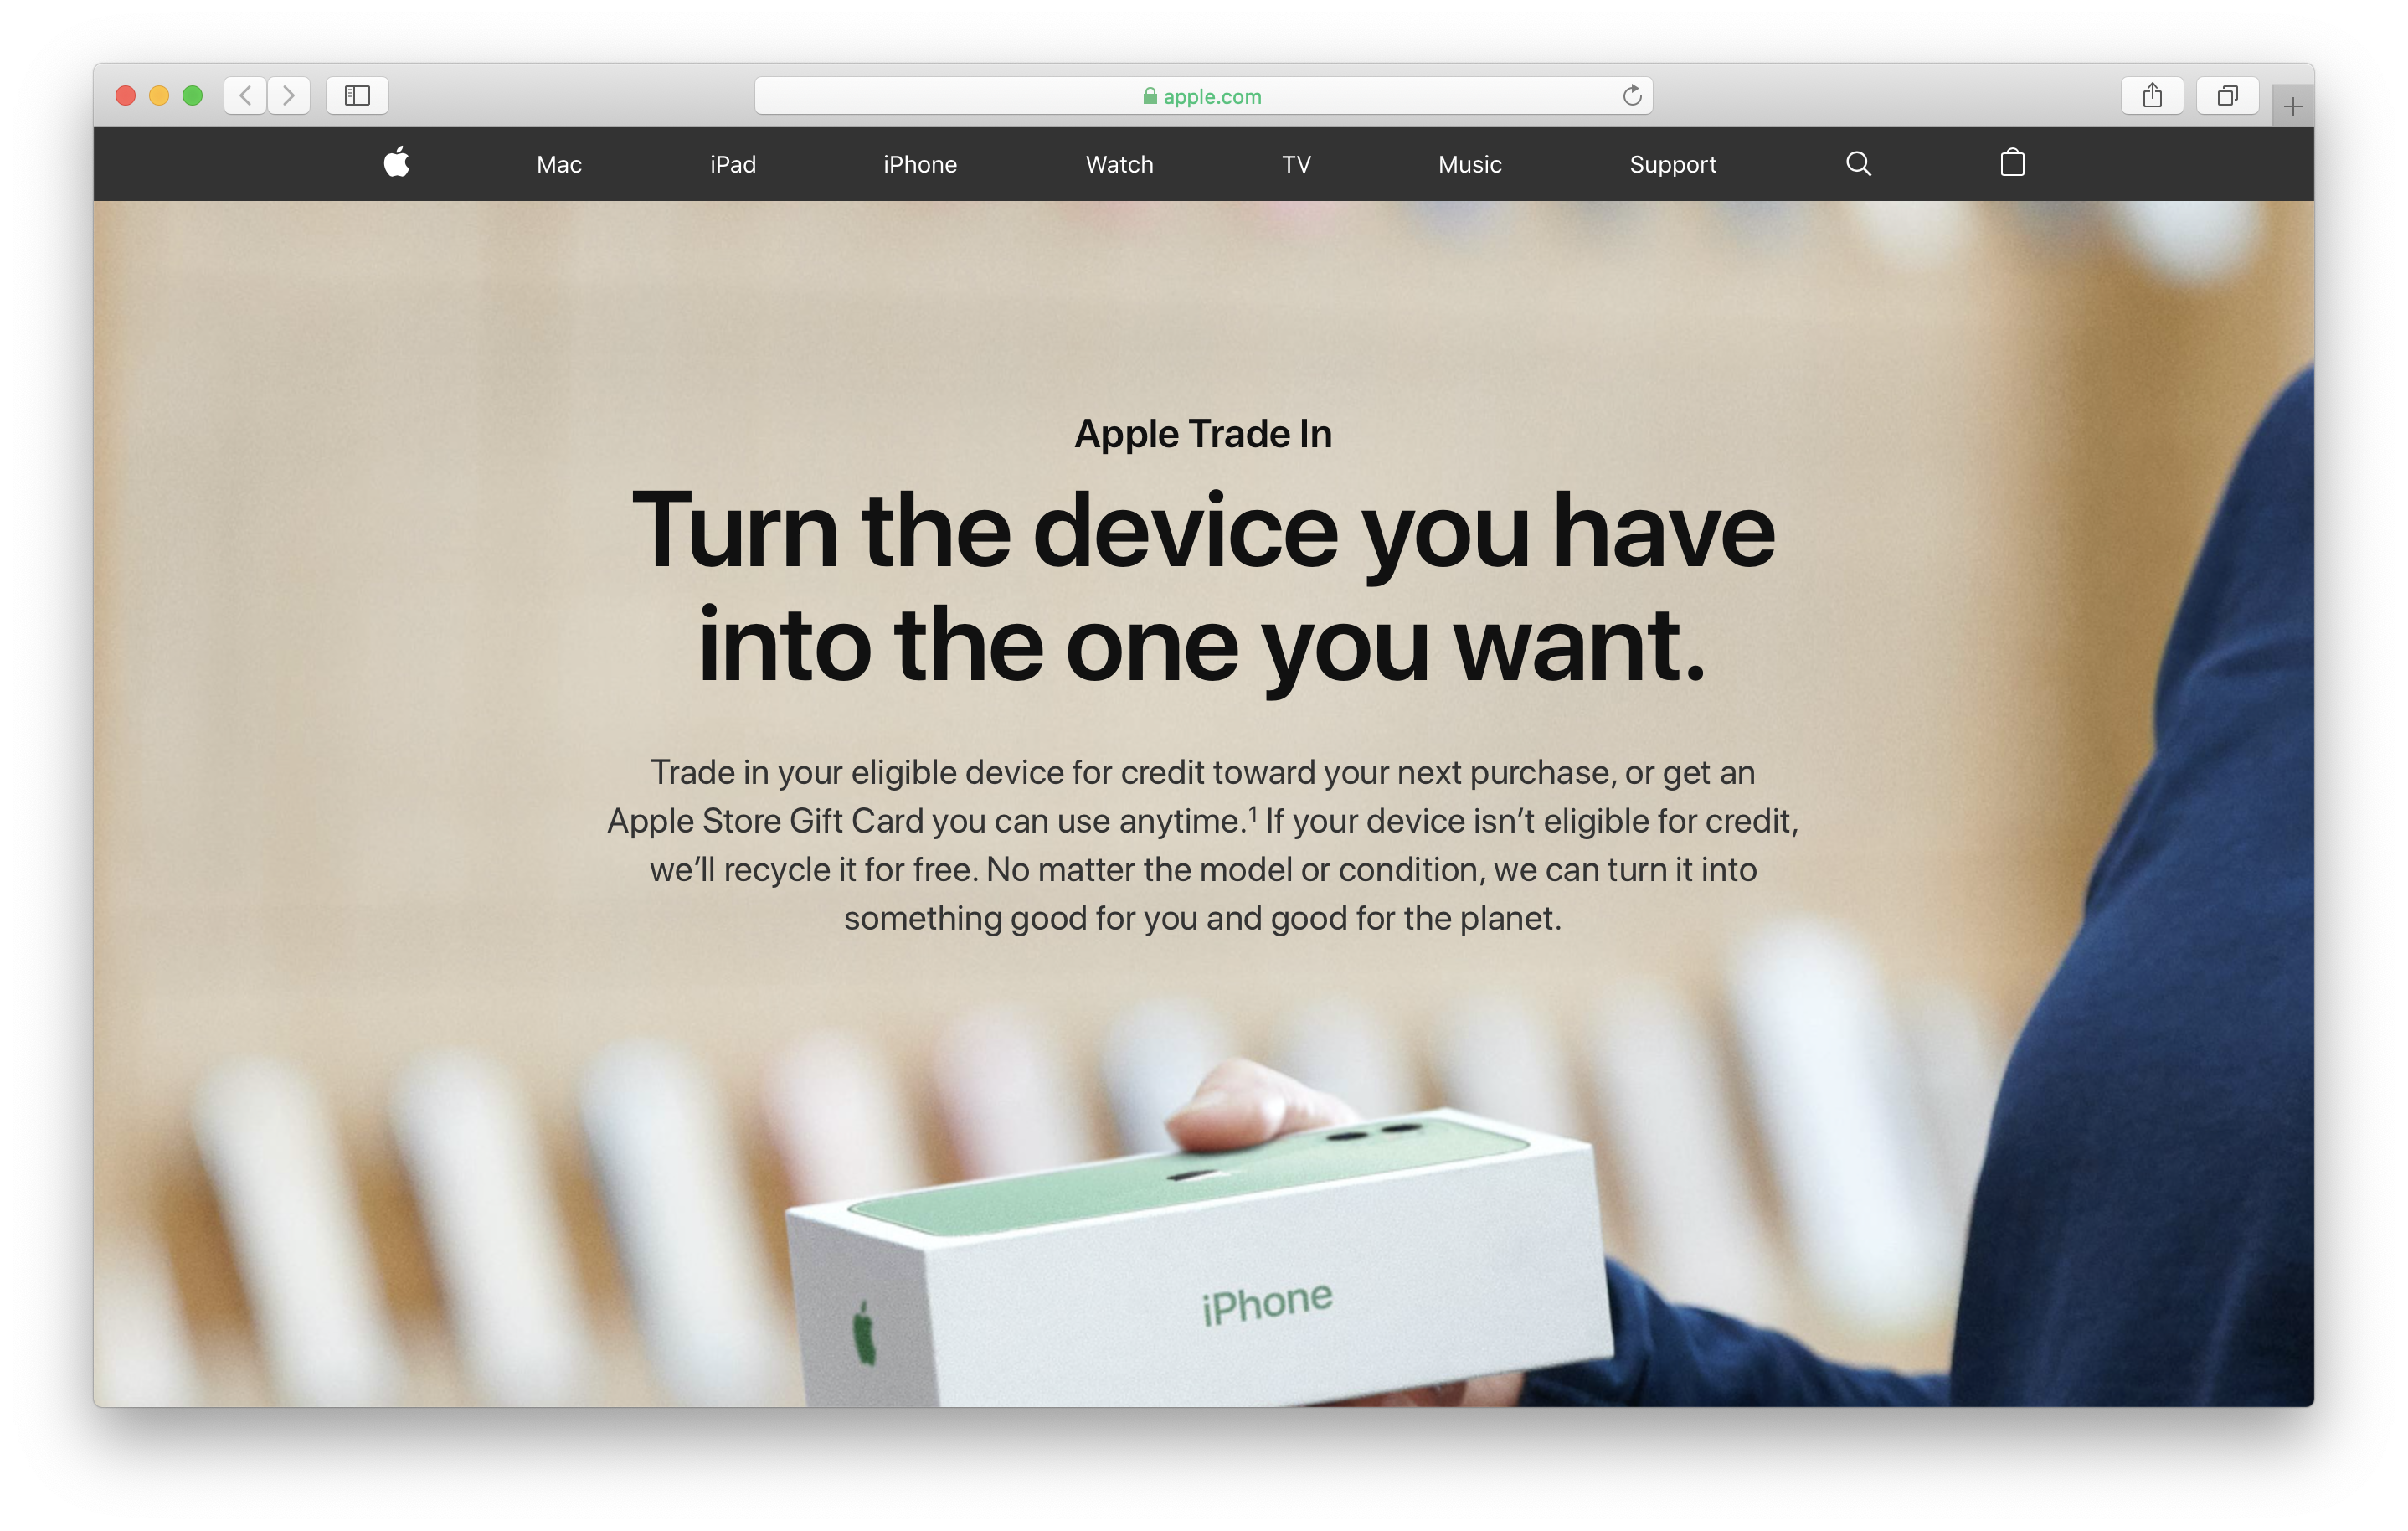 <span href="https://9to5mac.com/2019/11/18/is-apple-trade-in-the-best/">Es Apple el Comercio En la mejor manera de vender mi iPhone?</a>